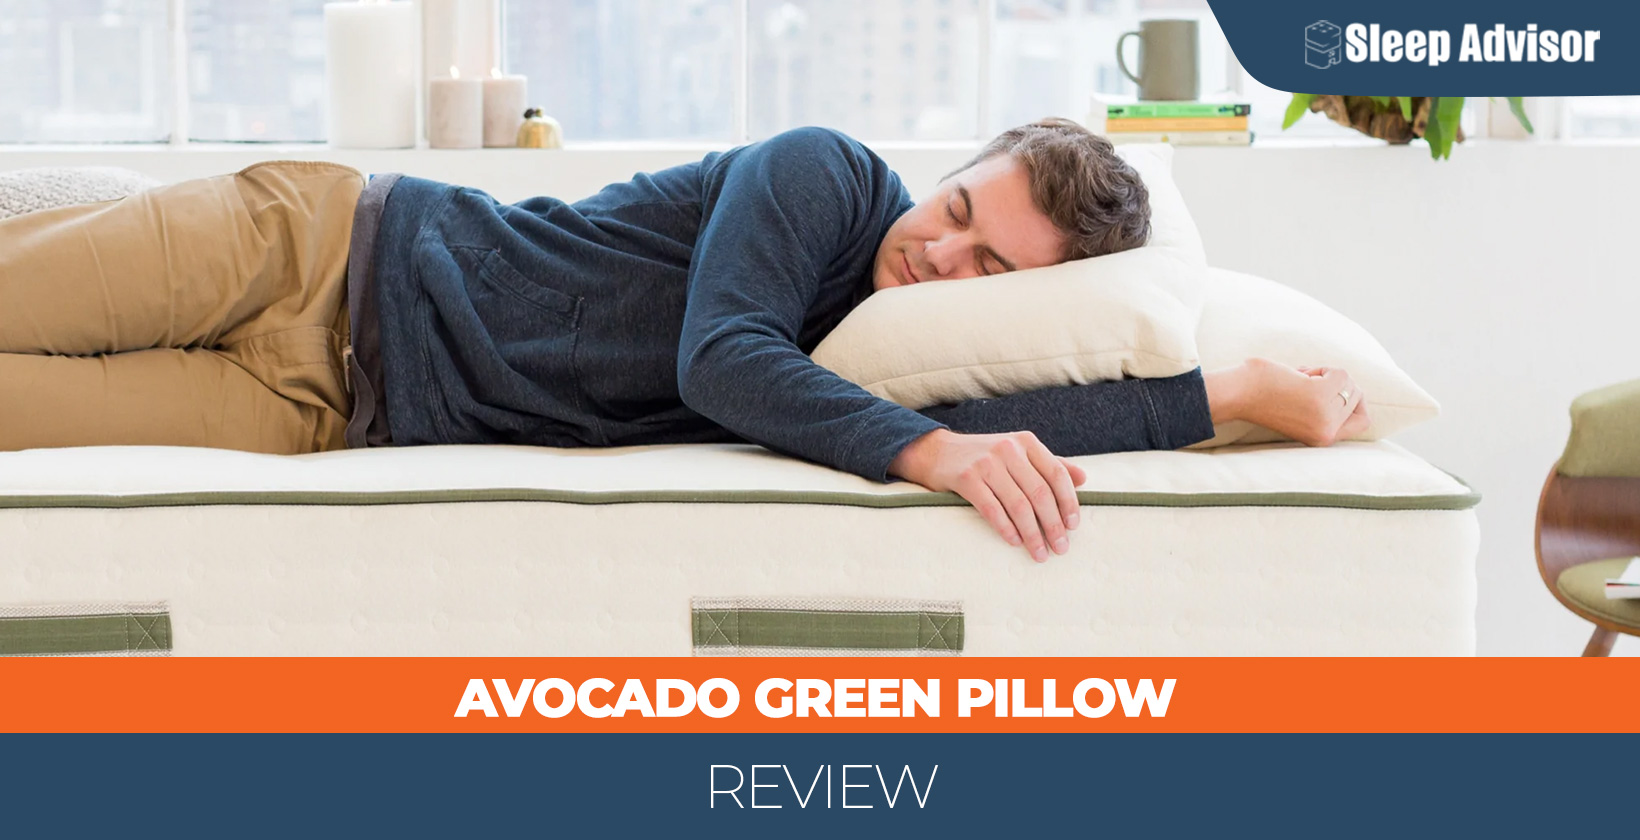 Avocado Green Pillow in depth